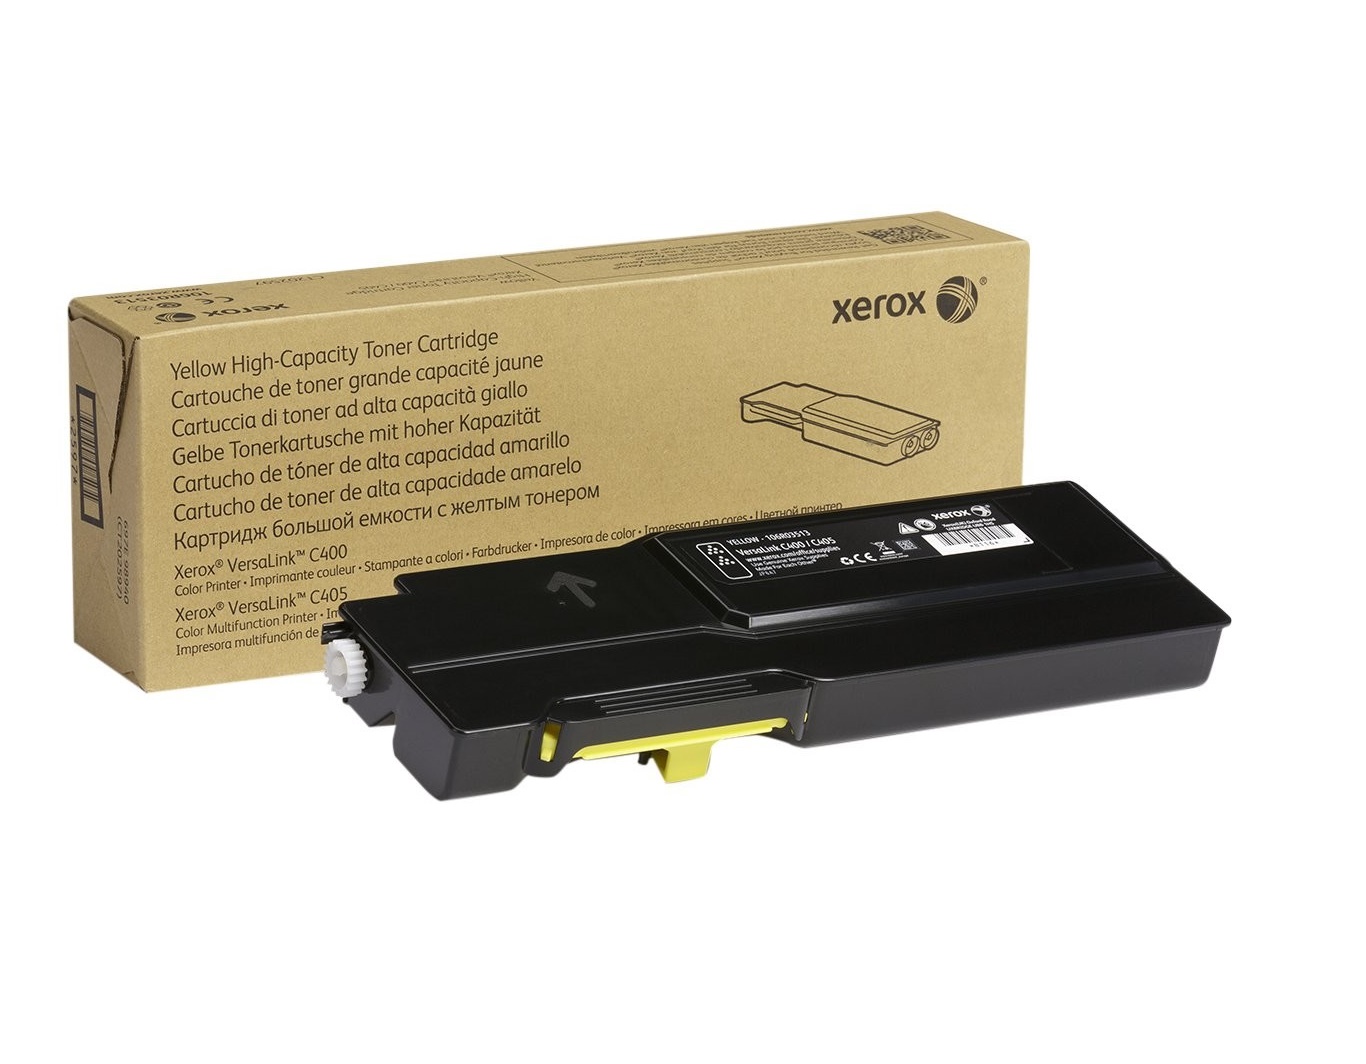 Xerox Genuine 106R03513 Yellow High Capacity Toner Cartridge For the Versalink C400/C405